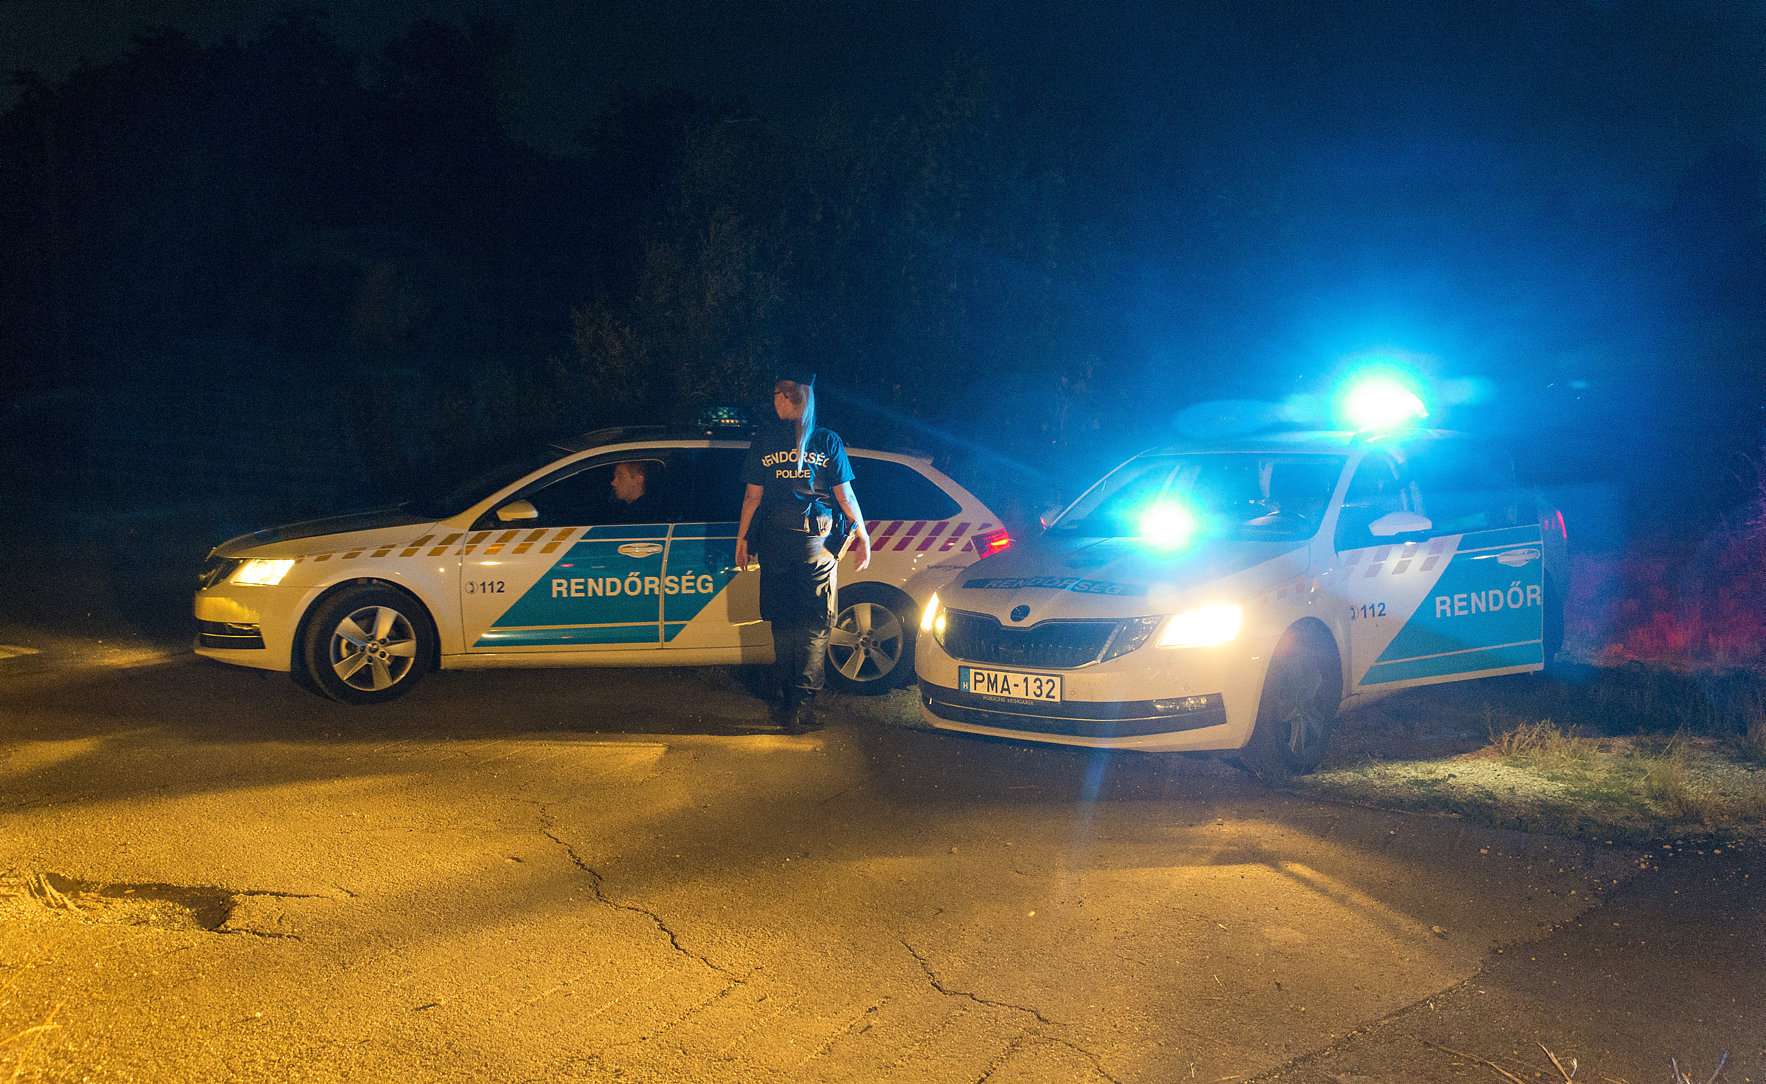 abda 謀殺罪 警察 匈牙利